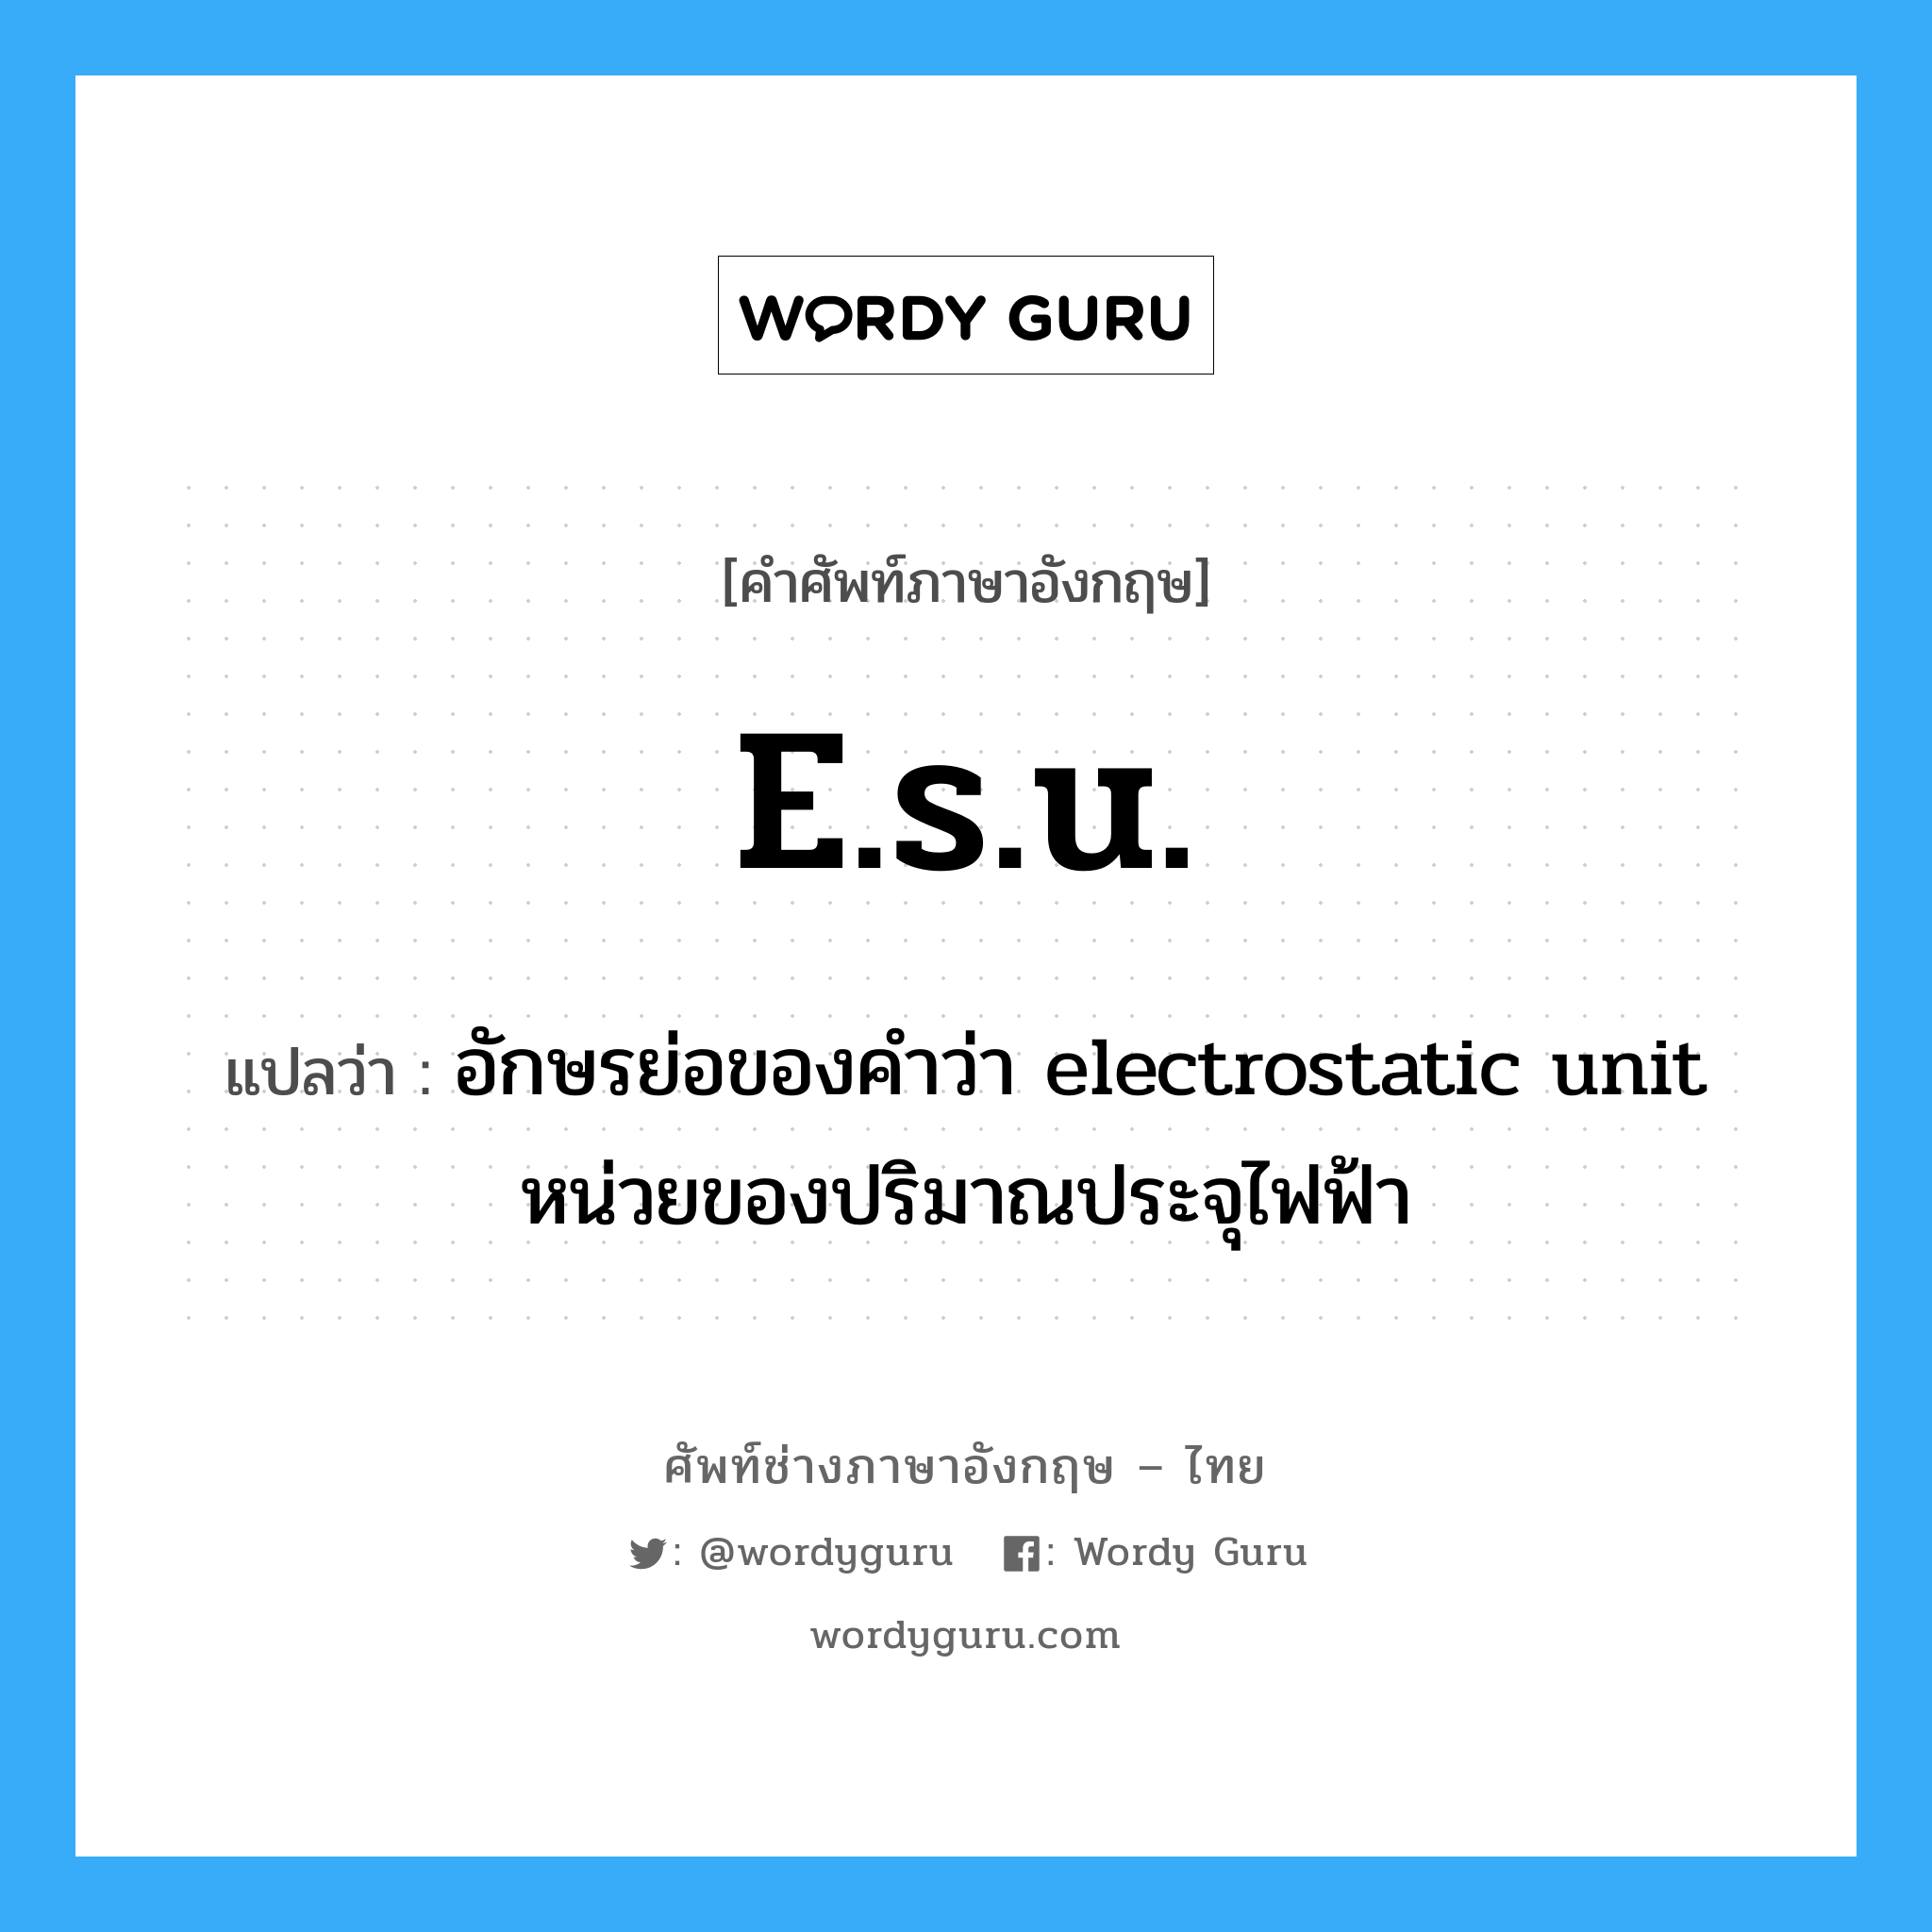 อักษรย่อของคำว่า electrostatic unit หน่วยของปริมาณประจุไฟฟ้า ภาษาอังกฤษ?, คำศัพท์ช่างภาษาอังกฤษ - ไทย อักษรย่อของคำว่า electrostatic unit หน่วยของปริมาณประจุไฟฟ้า คำศัพท์ภาษาอังกฤษ อักษรย่อของคำว่า electrostatic unit หน่วยของปริมาณประจุไฟฟ้า แปลว่า e.s.u.